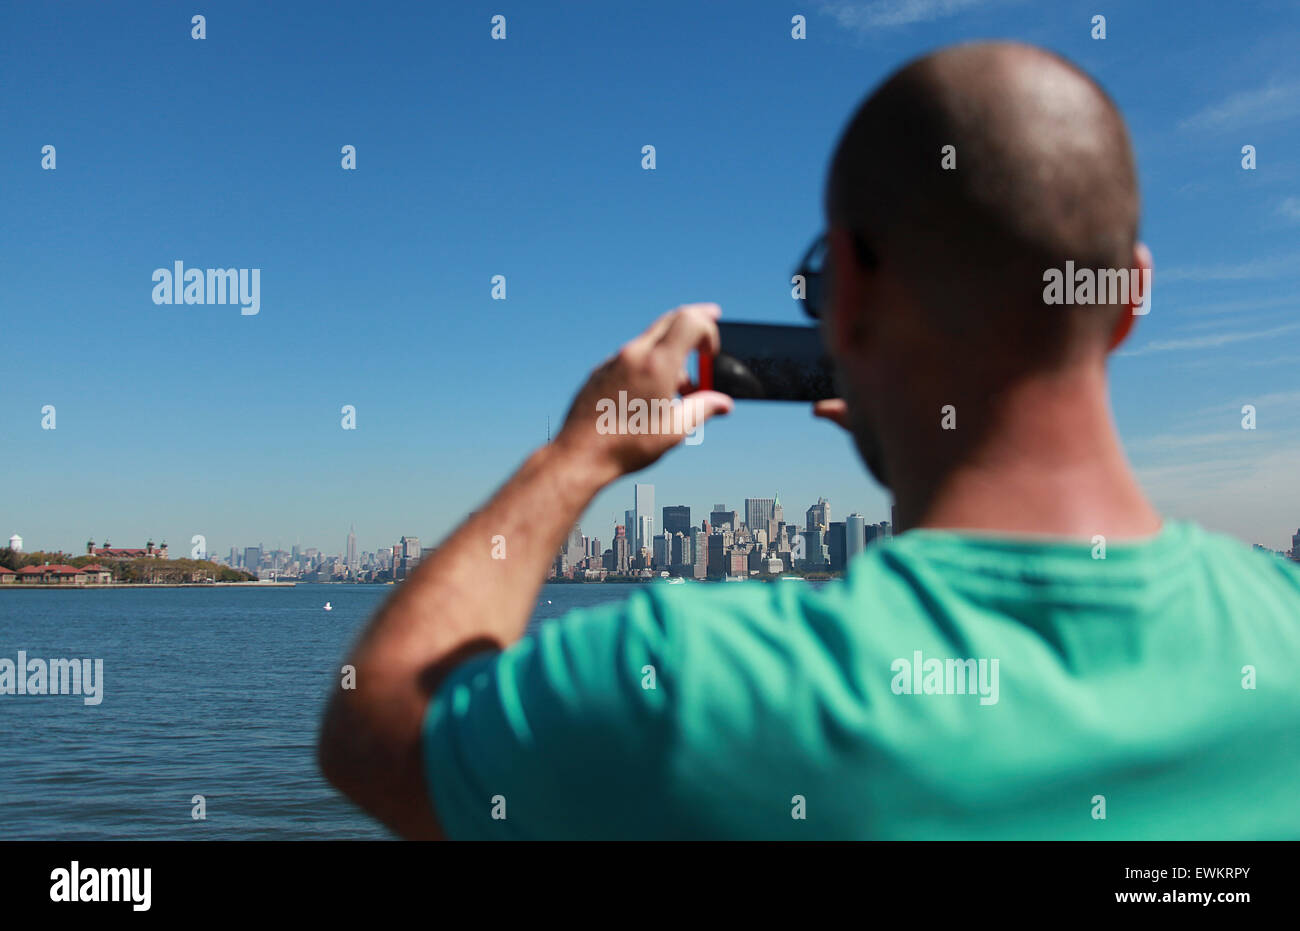 L'homme de prendre une photo de New York skyline sur son téléphone mobile Banque D'Images